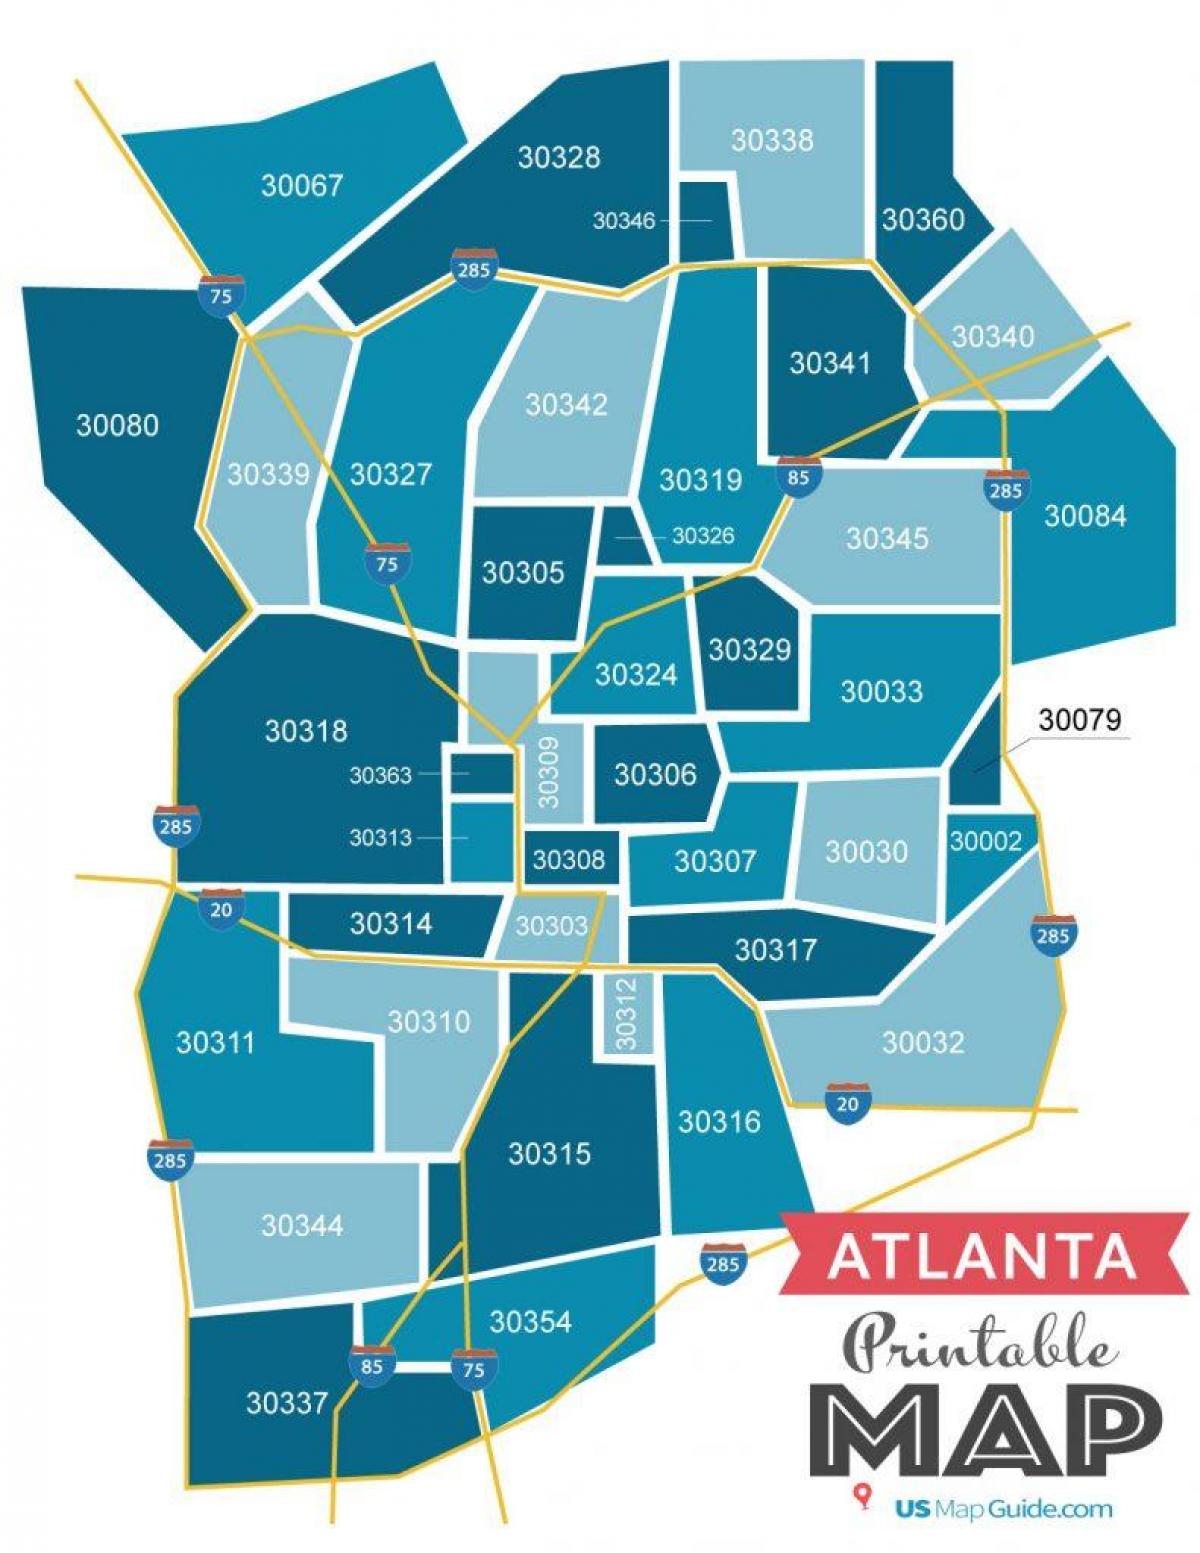 Karte der Postleitzahlen von Atlanta